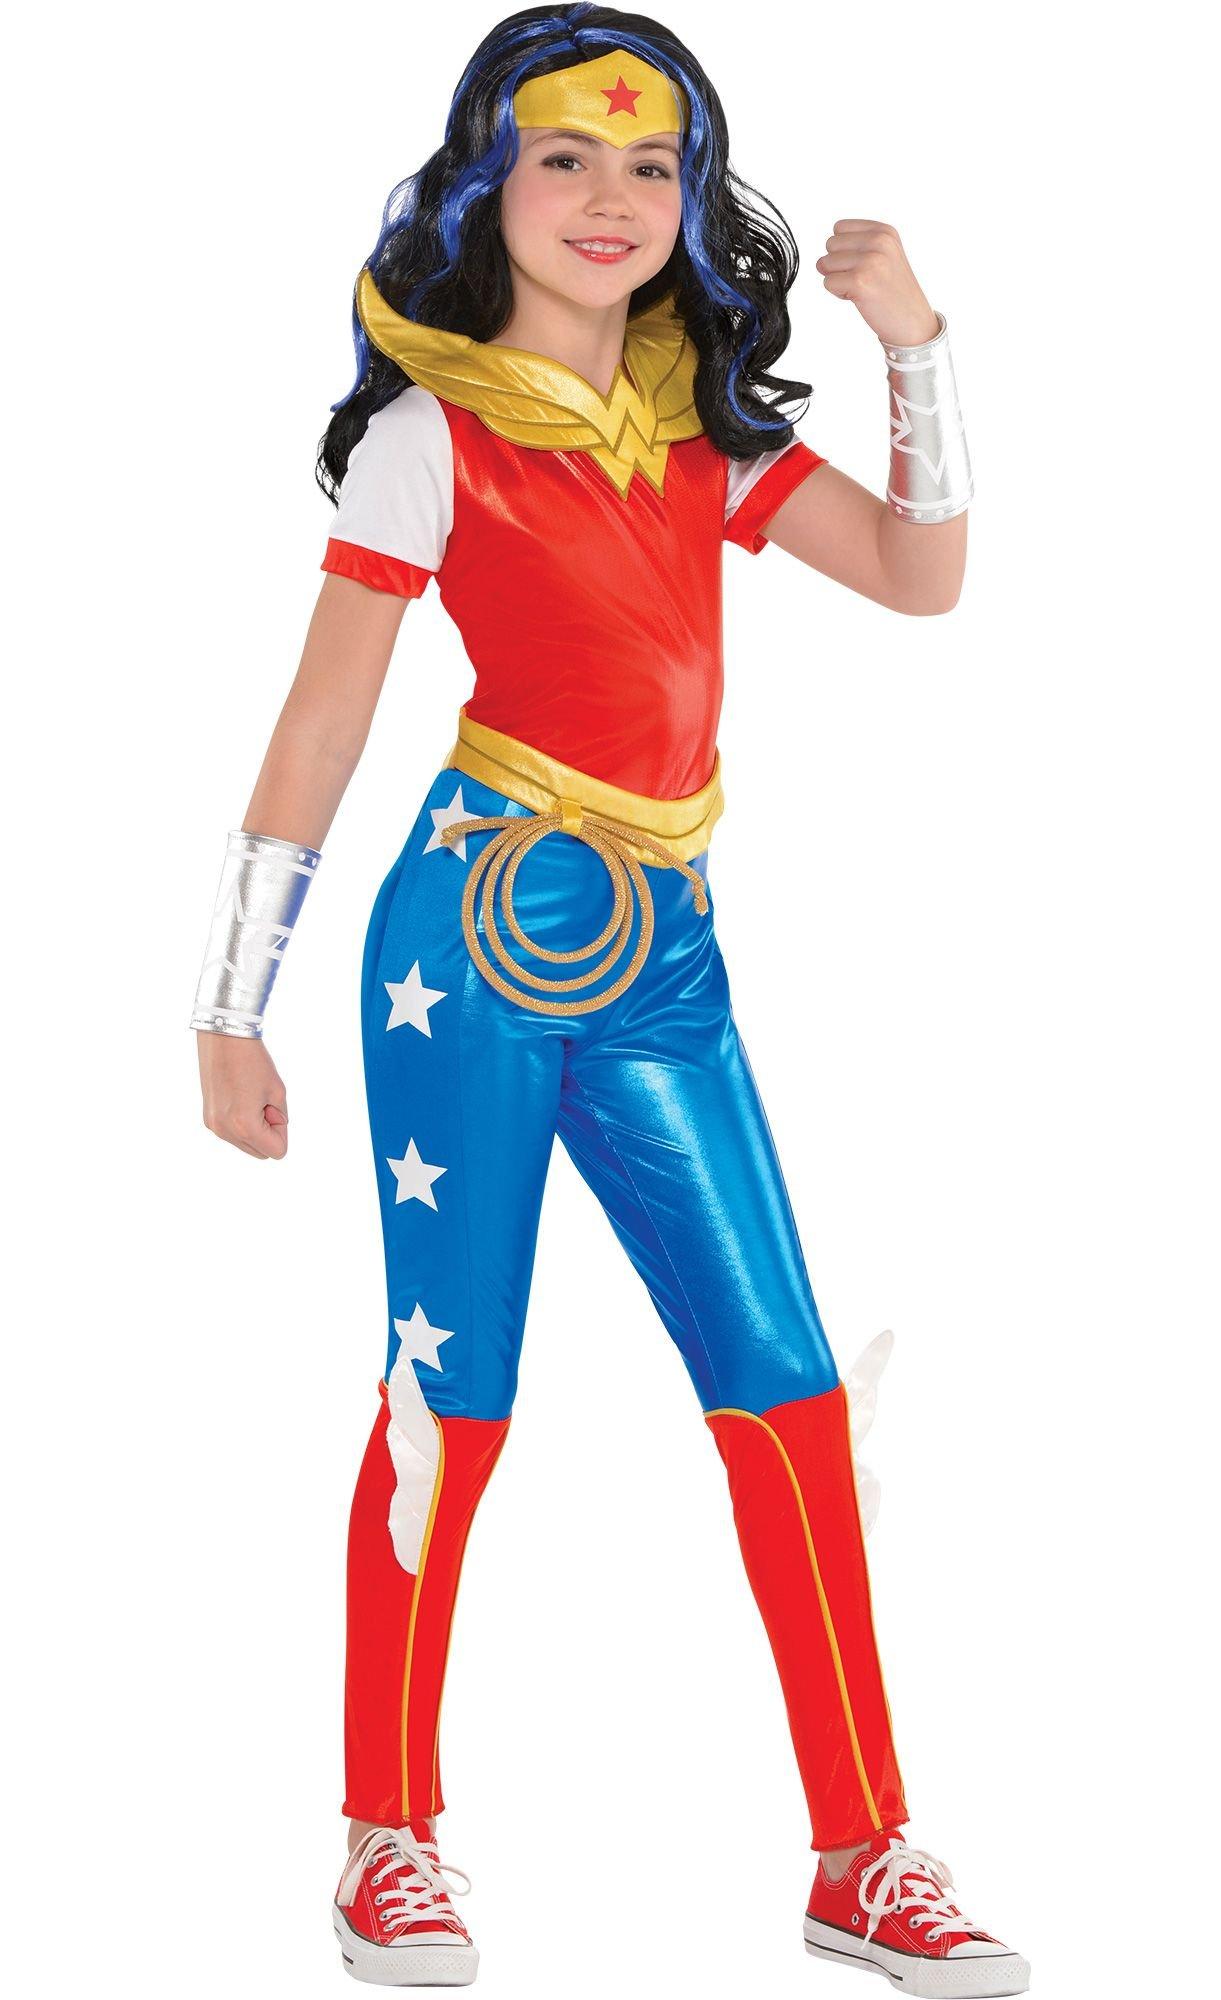 Costume Super Hero